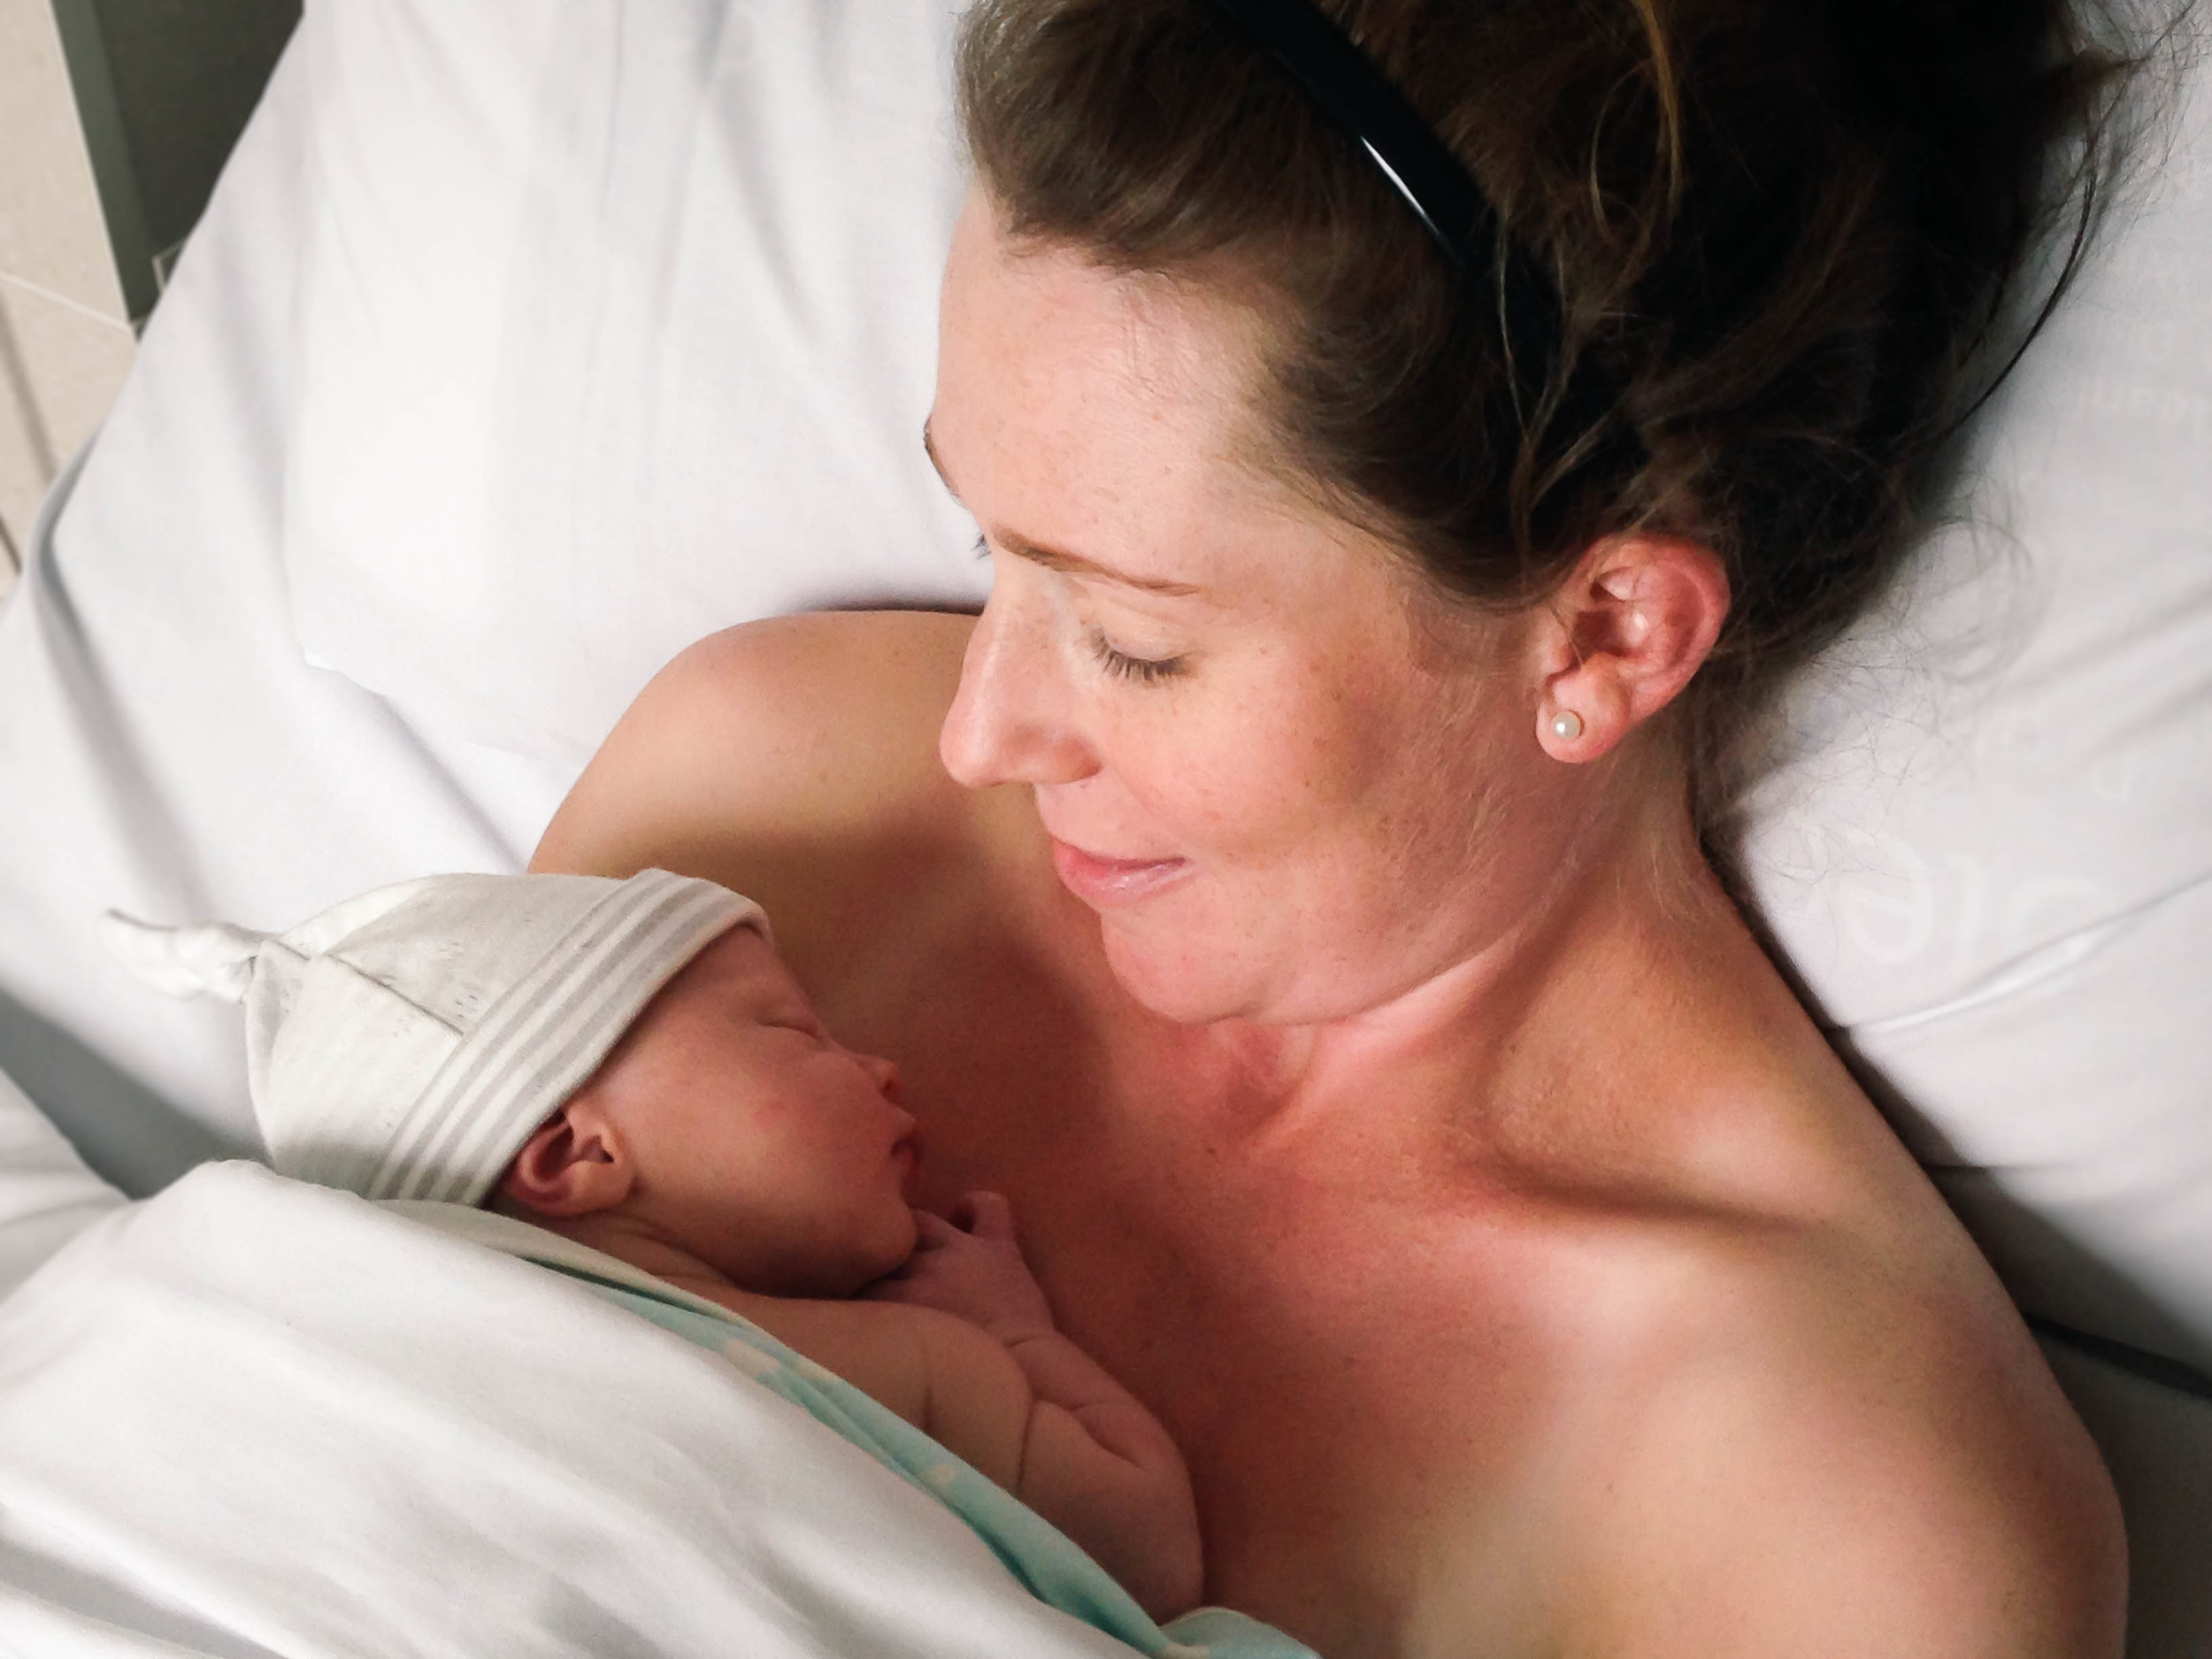 Lauren Clarke welcomed daughter Ava Rose born on the 27th of February, 2014 in Melbourne, Australia.